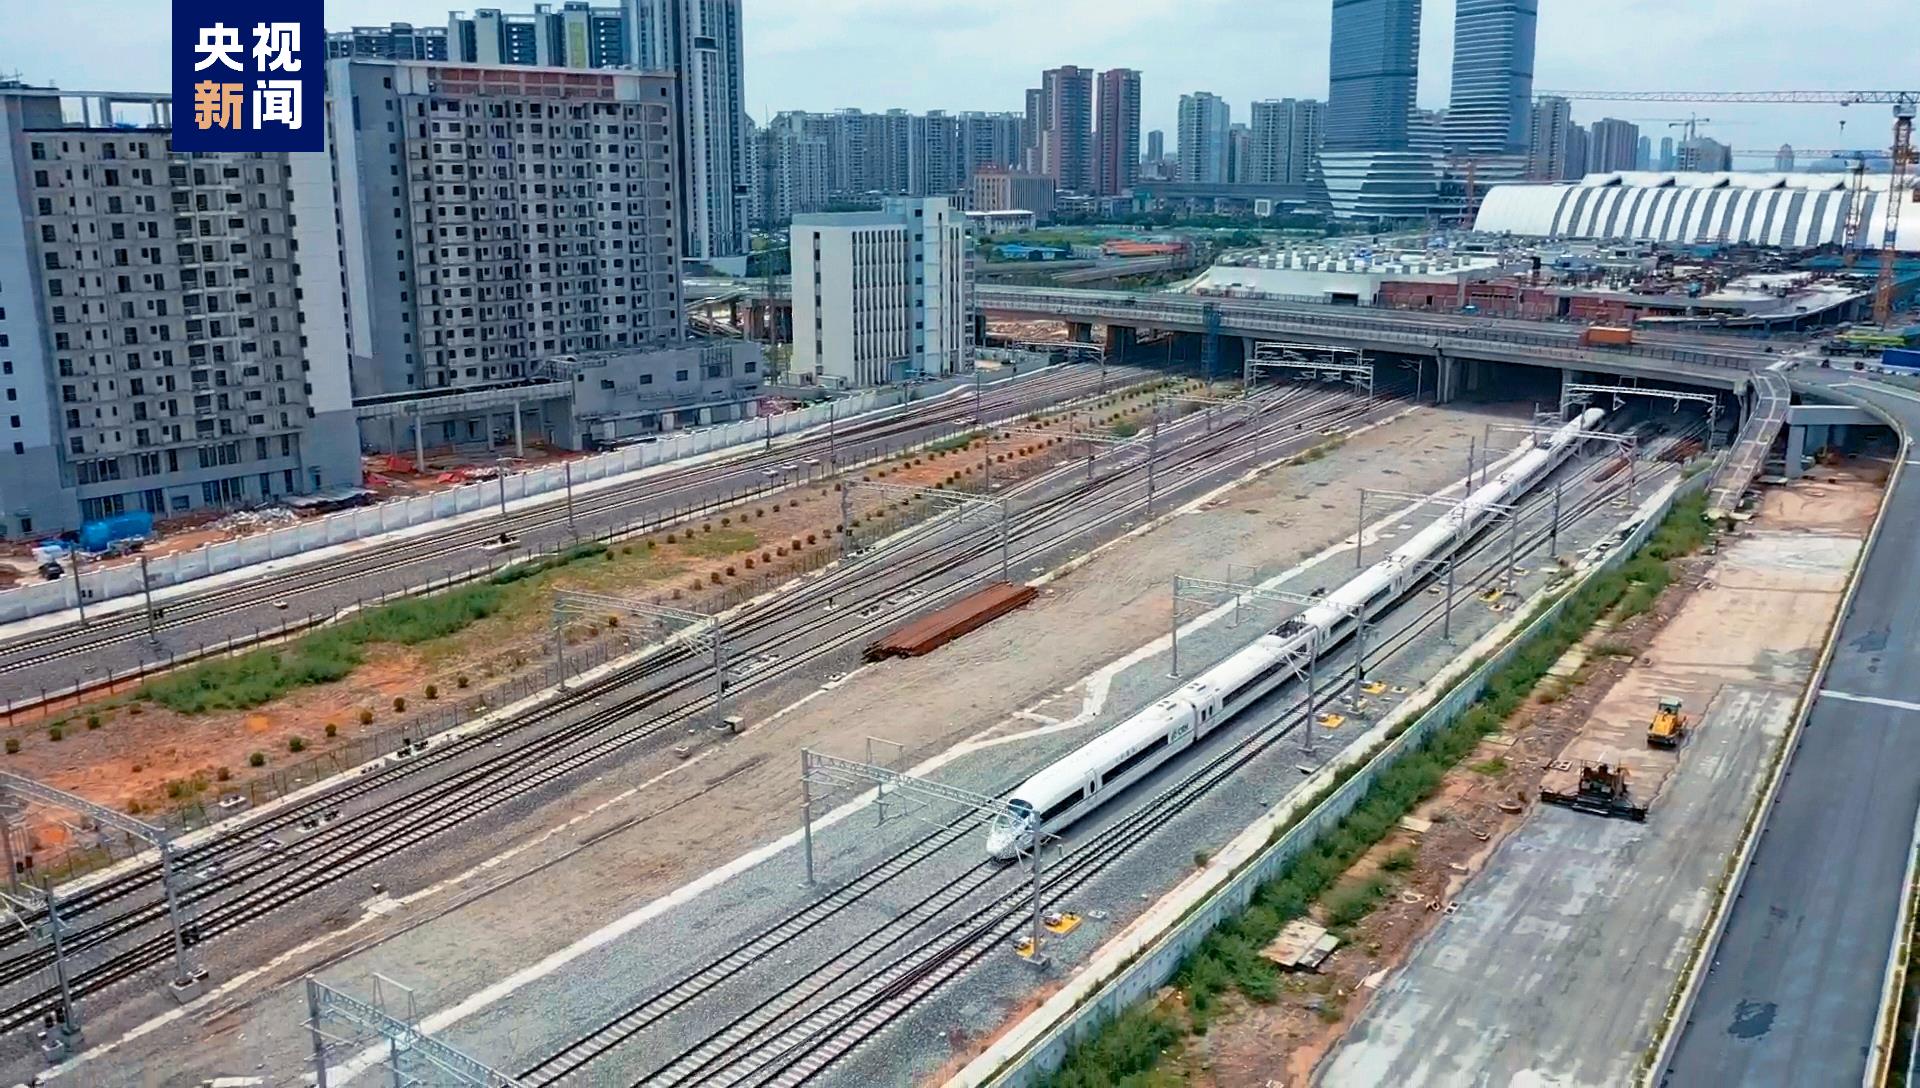 广汕高铁开出首趟试运行列车 全线开通运营进入倒计时